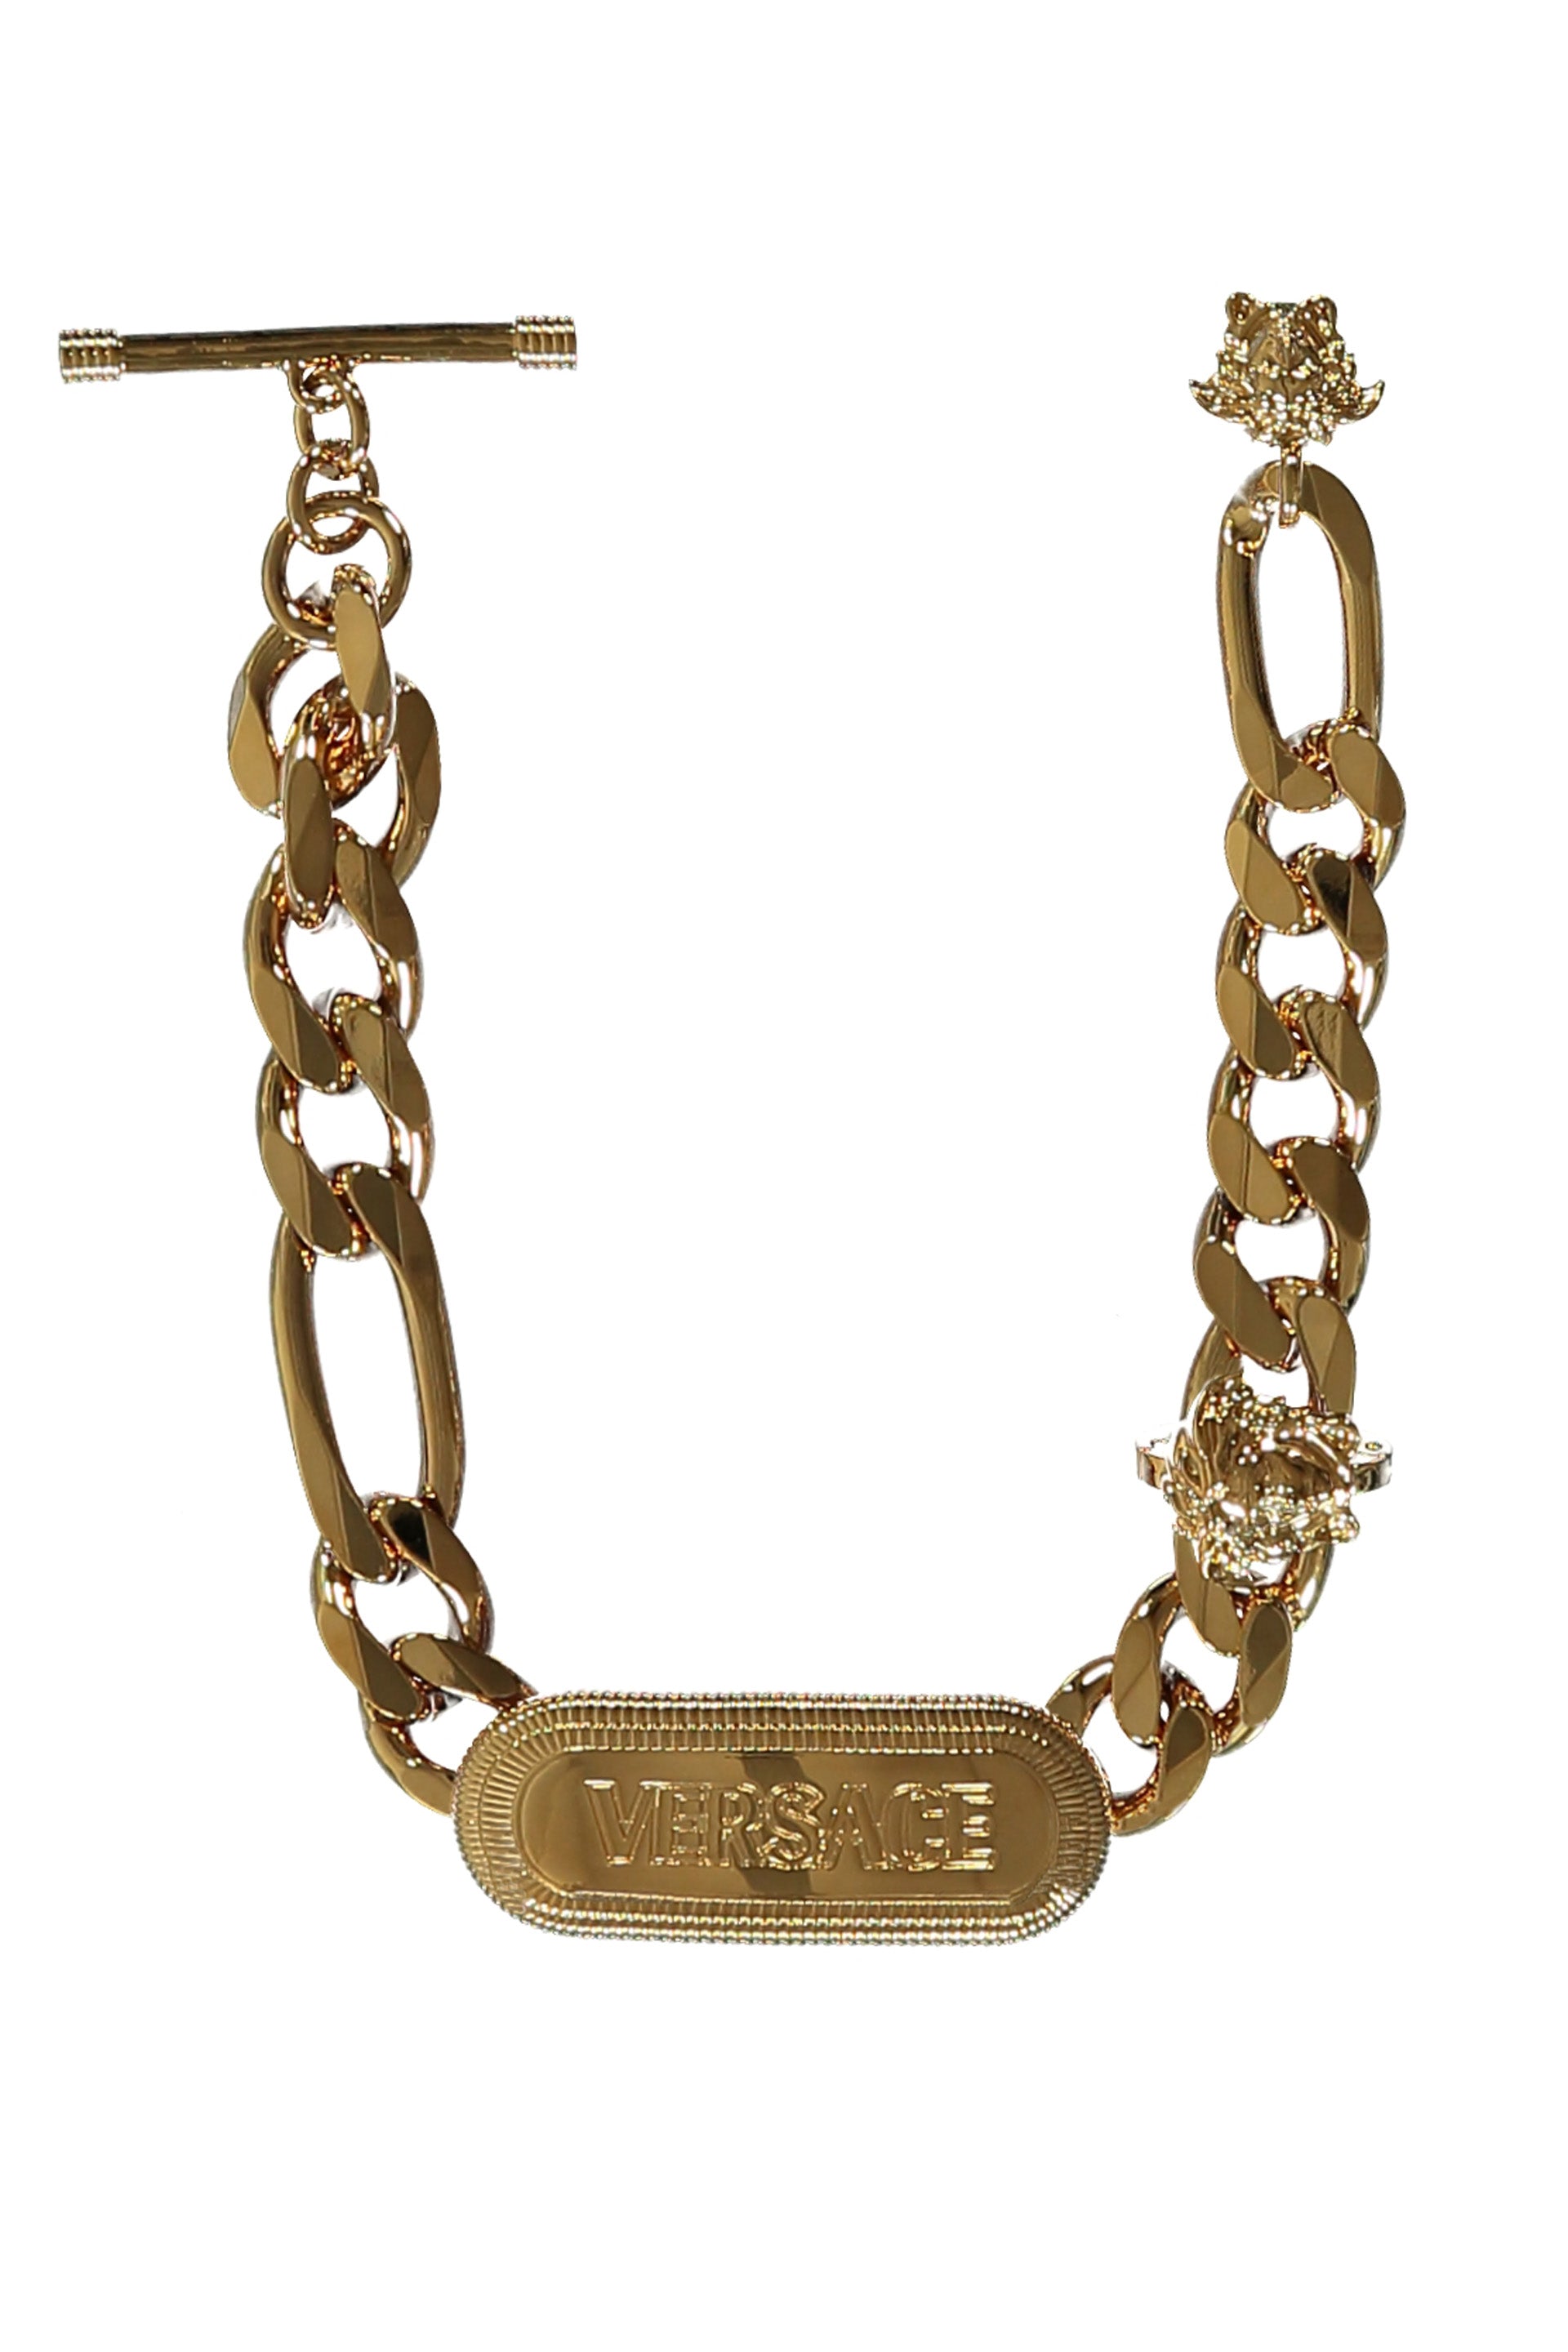 Medusa pendant chain bracelet-Versace-OUTLET-SALE-ARCHIVIST